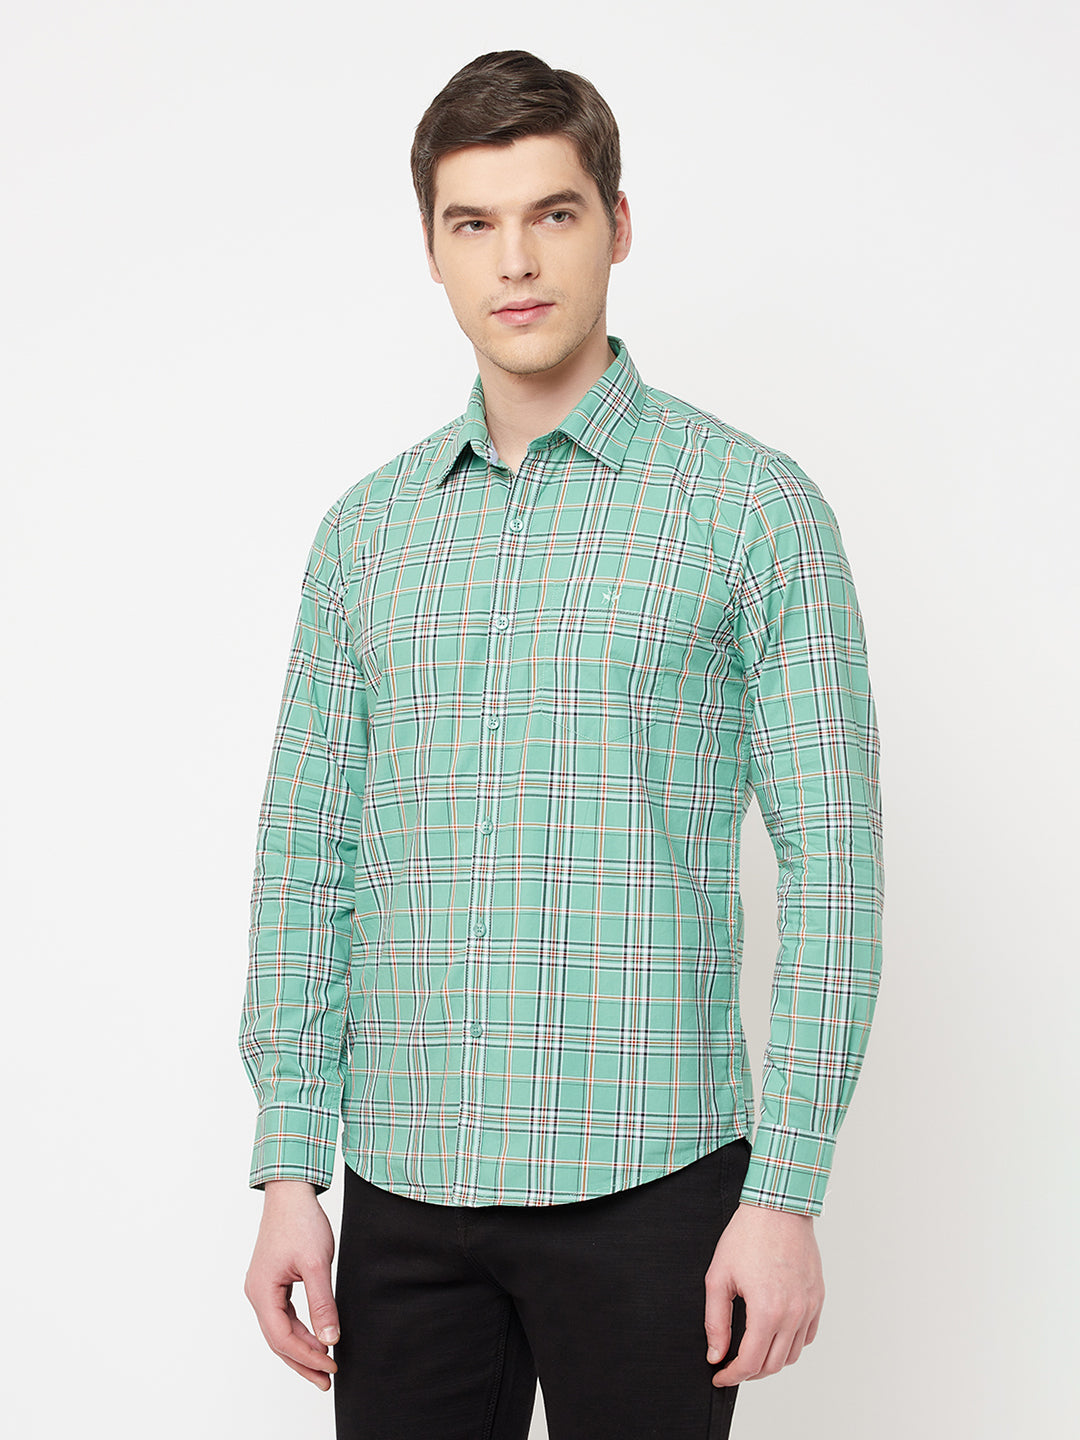 Green Checked Casual Shirt - Men Shirts